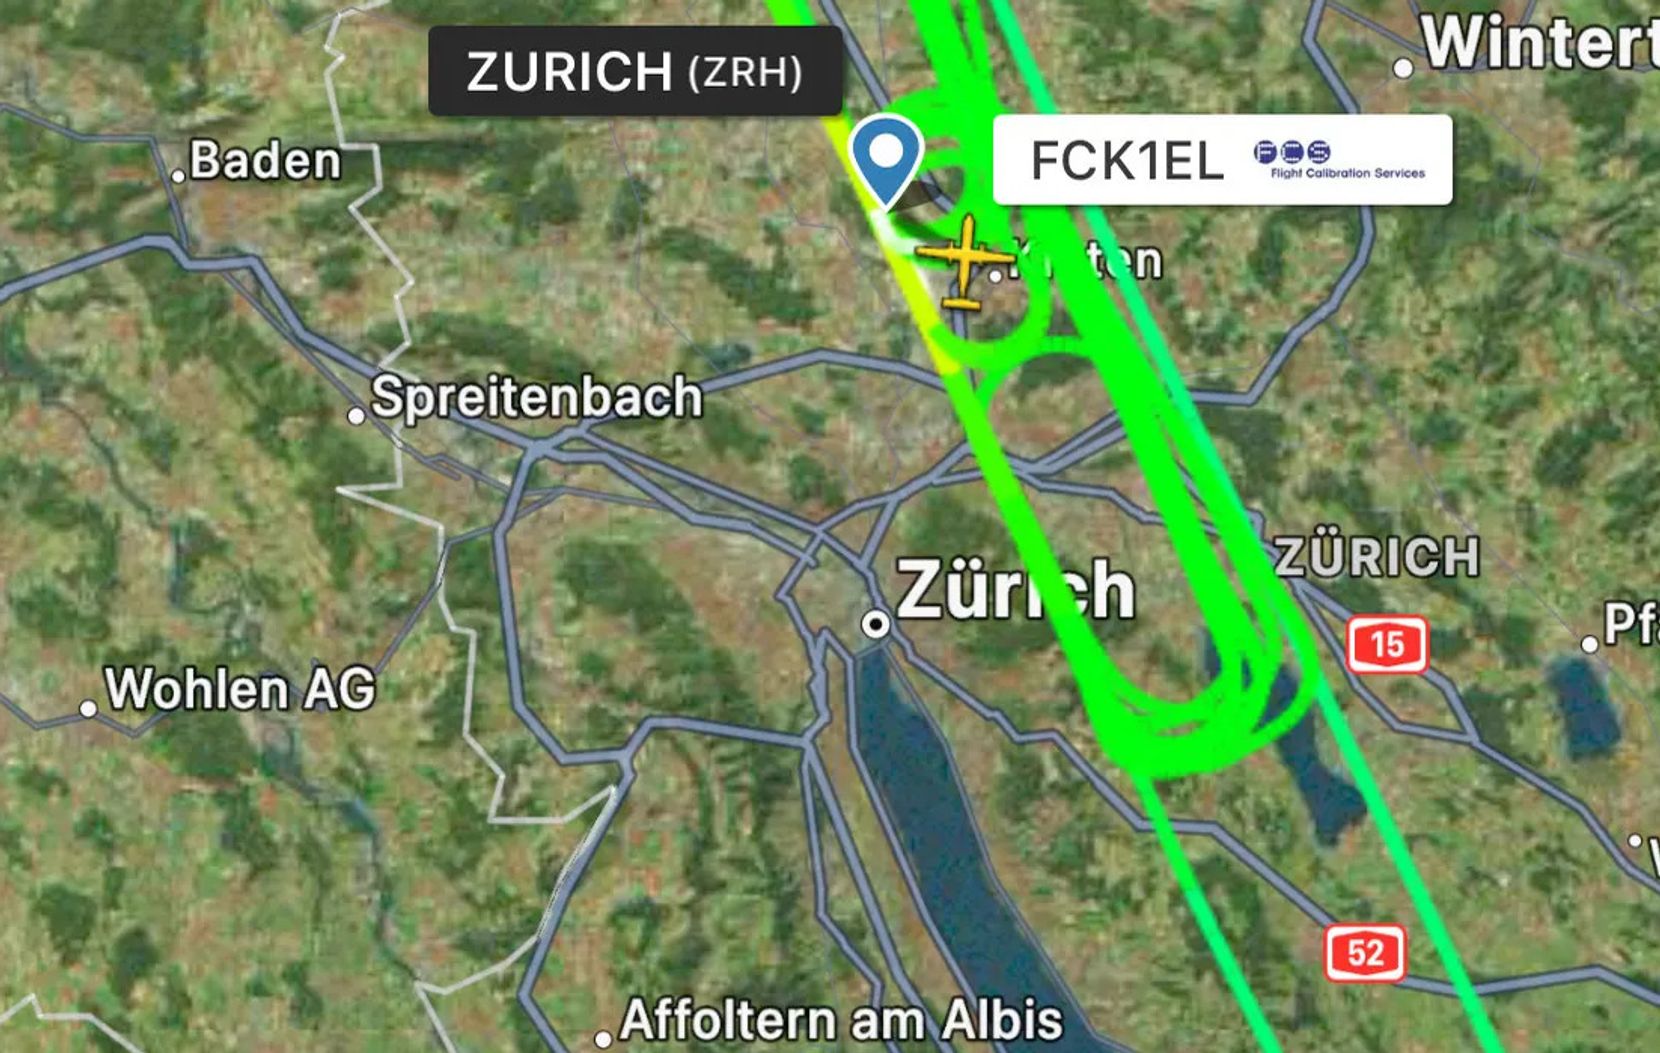 Man sieht eine Landkarte vom Kanton Zürich. Darauf sind mehrere leuchtgrüne Linien eingezeichnet, die die Messflüge über dem Glattal und dem Pfannenstiel zeigen.